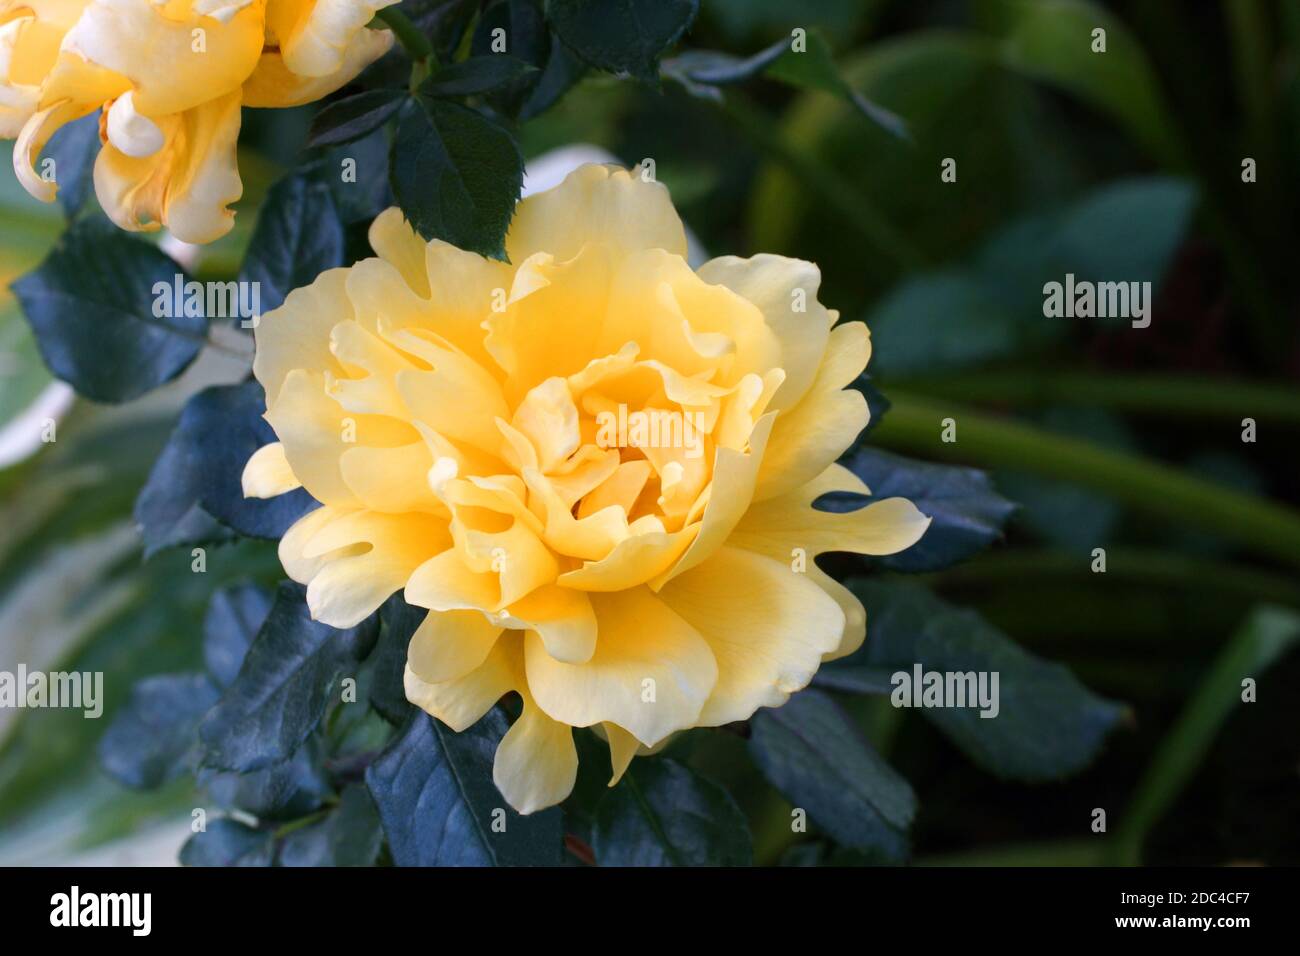 Rosa Splendid Ruffles belle rose jaune gros plan. Fleurs, dans un jardin dans des conditions naturelles au milieu de la verdure, sous le ciel ouvert. Banque D'Images